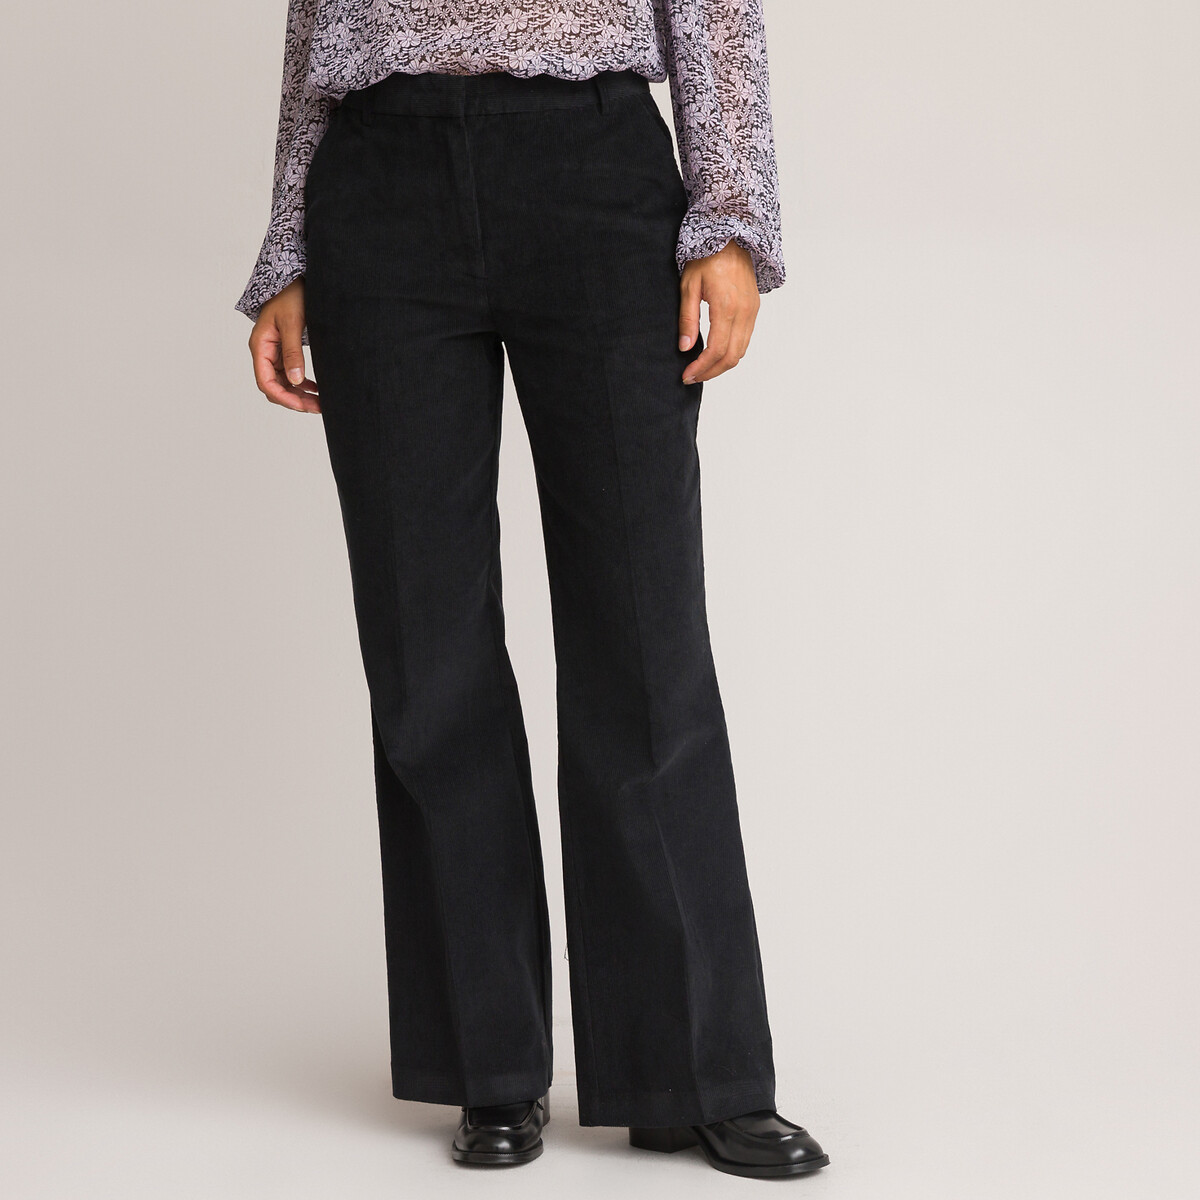 La Redoute Femme Vêtements Pantalons & Jeans Jeans Baggy & Large P FLARE 4PP Jean flare 